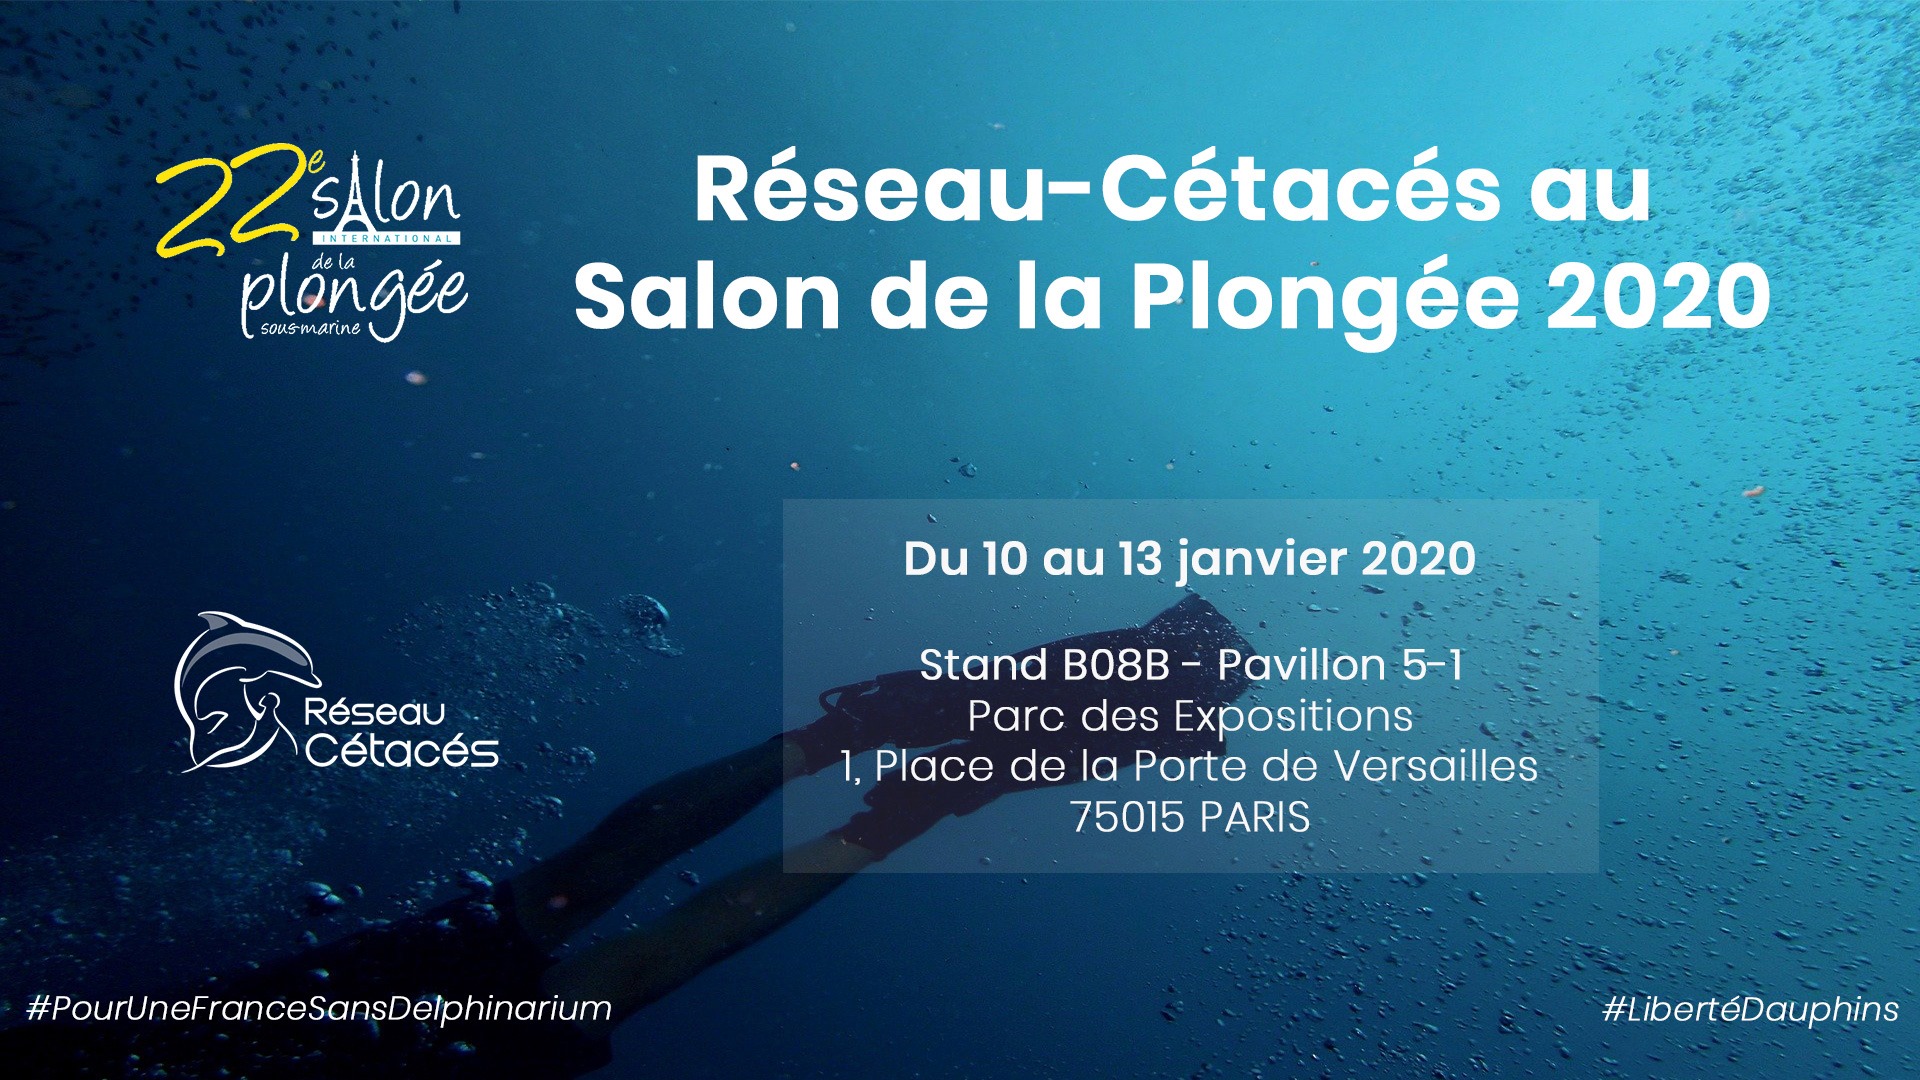 Réseau-Cétacés au Salon de la Plongée, du 10 au 13 janvier 2020 ~ Paris